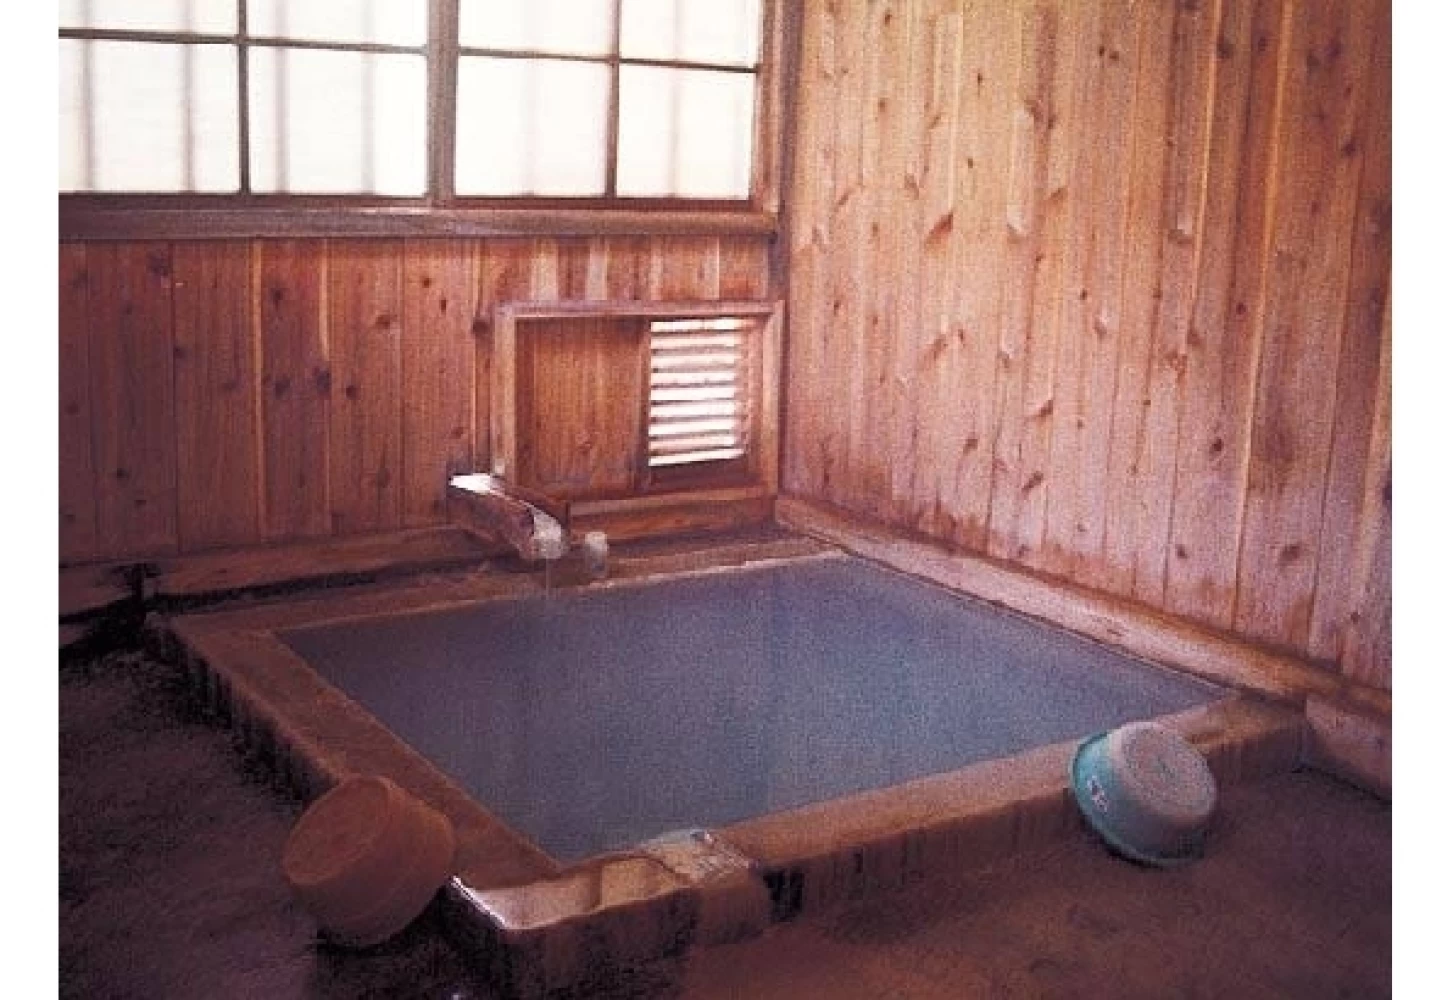 鶴の湯温泉の内風呂の一つ「黒湯」